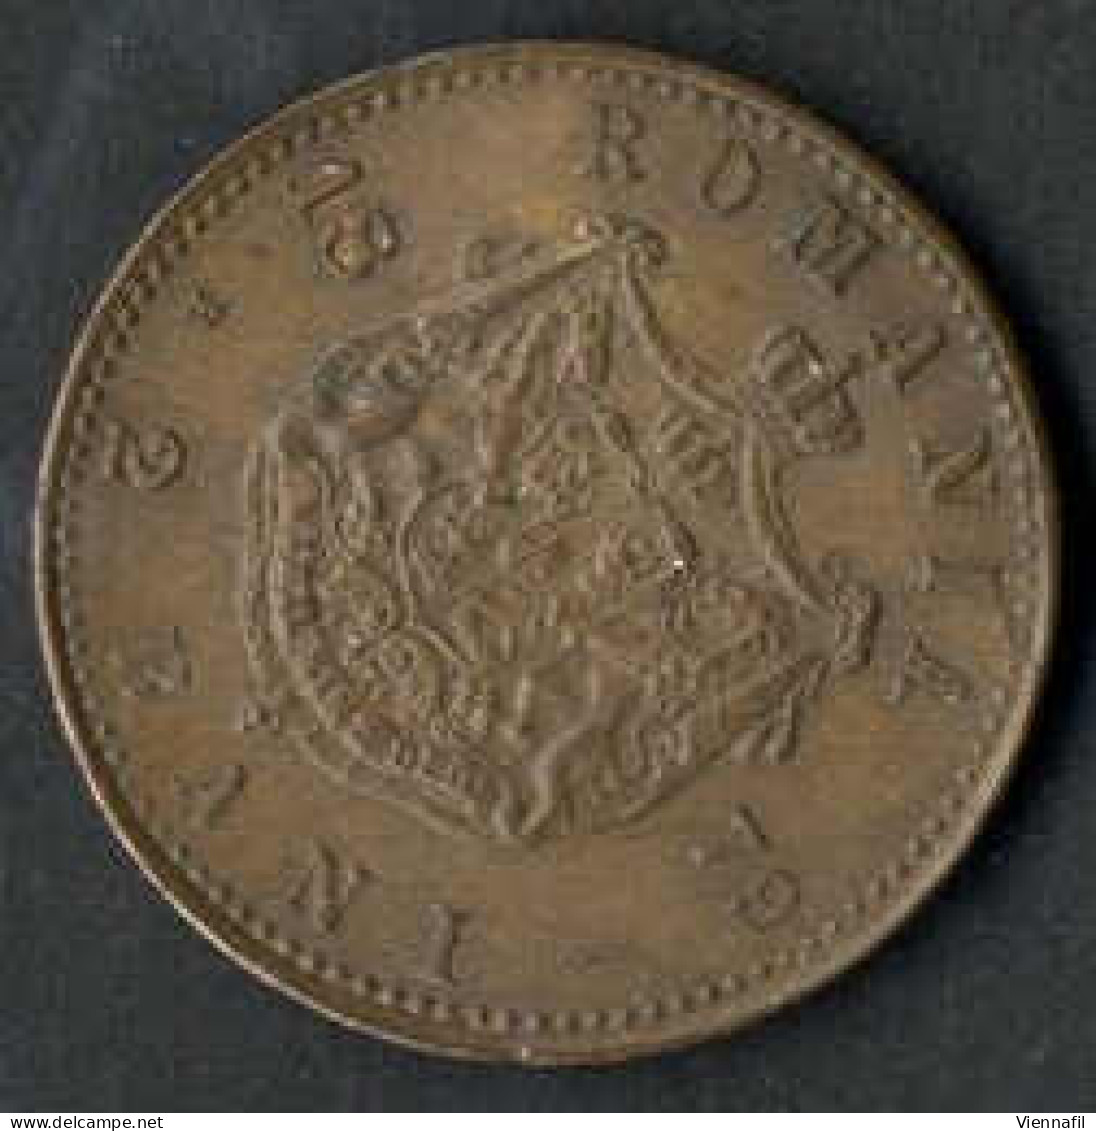 2, 10 Bani und 10 Lei, Lot mit 11 Münzen, dabei 2 Bani 1879 B in vorzüglich, die restlichen Münzen von schön+ bis sehr s